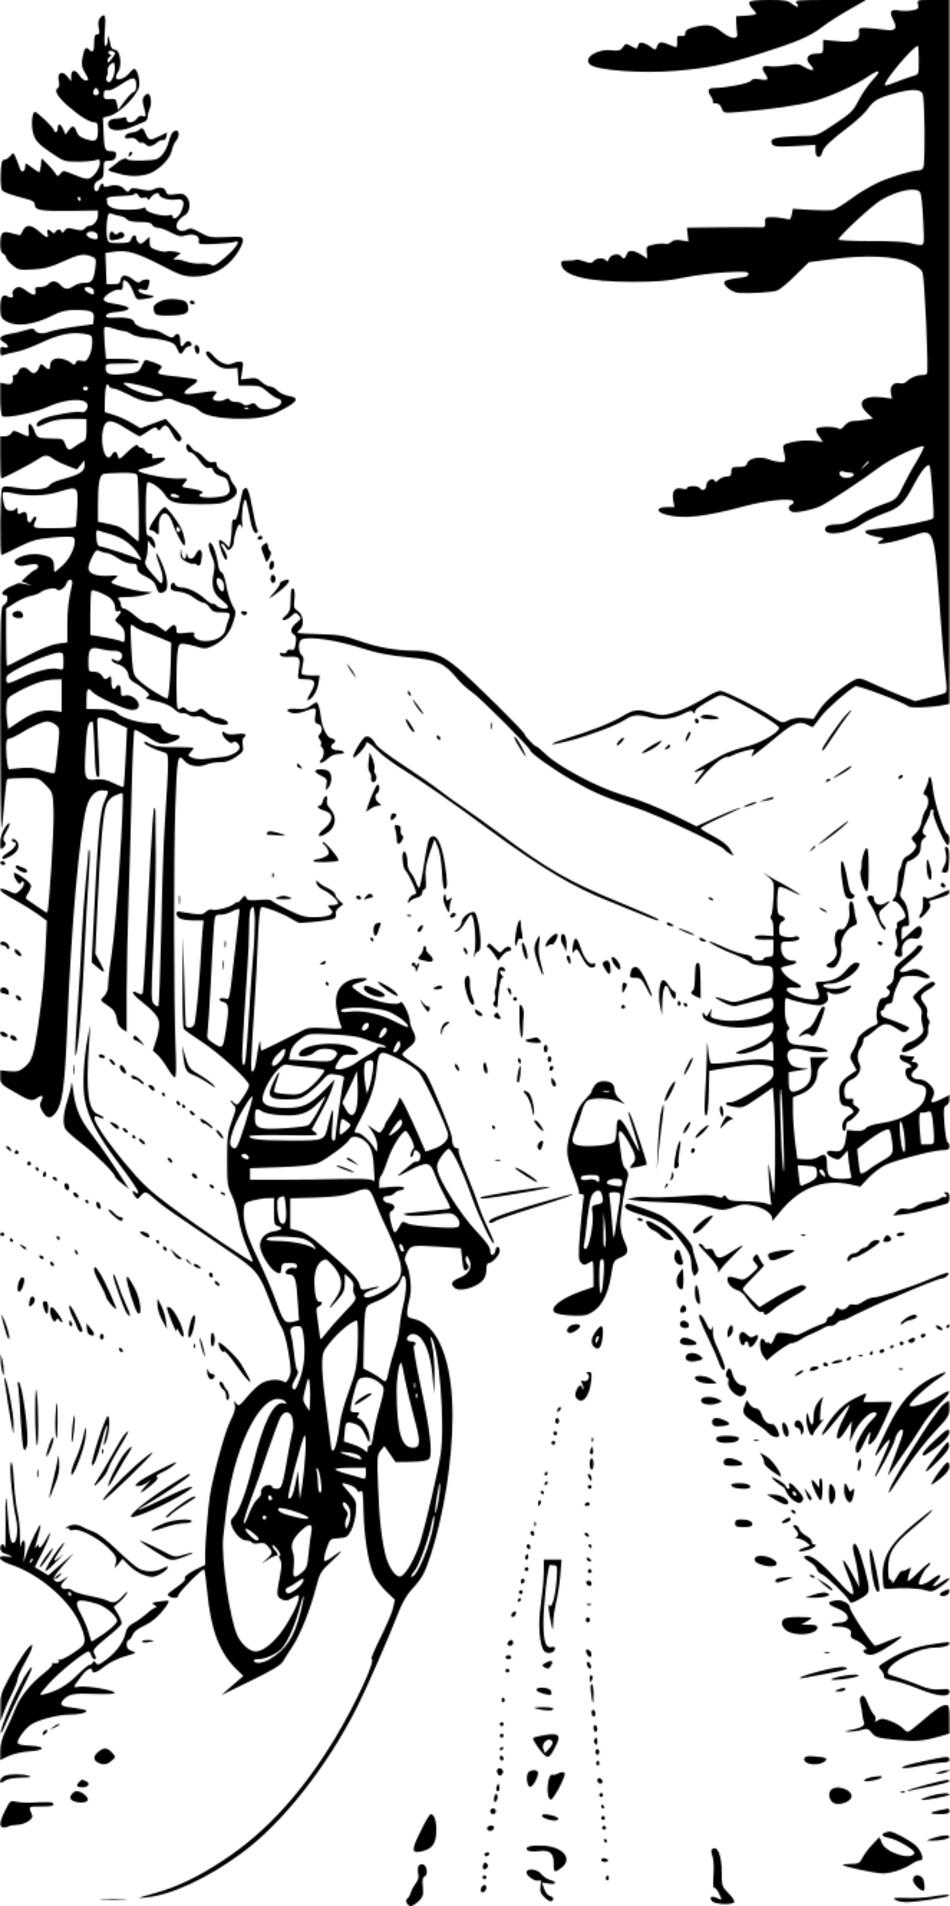 Livre de coloriage Les cyclistes recherchent de nouveaux itinéraires (Verticale)